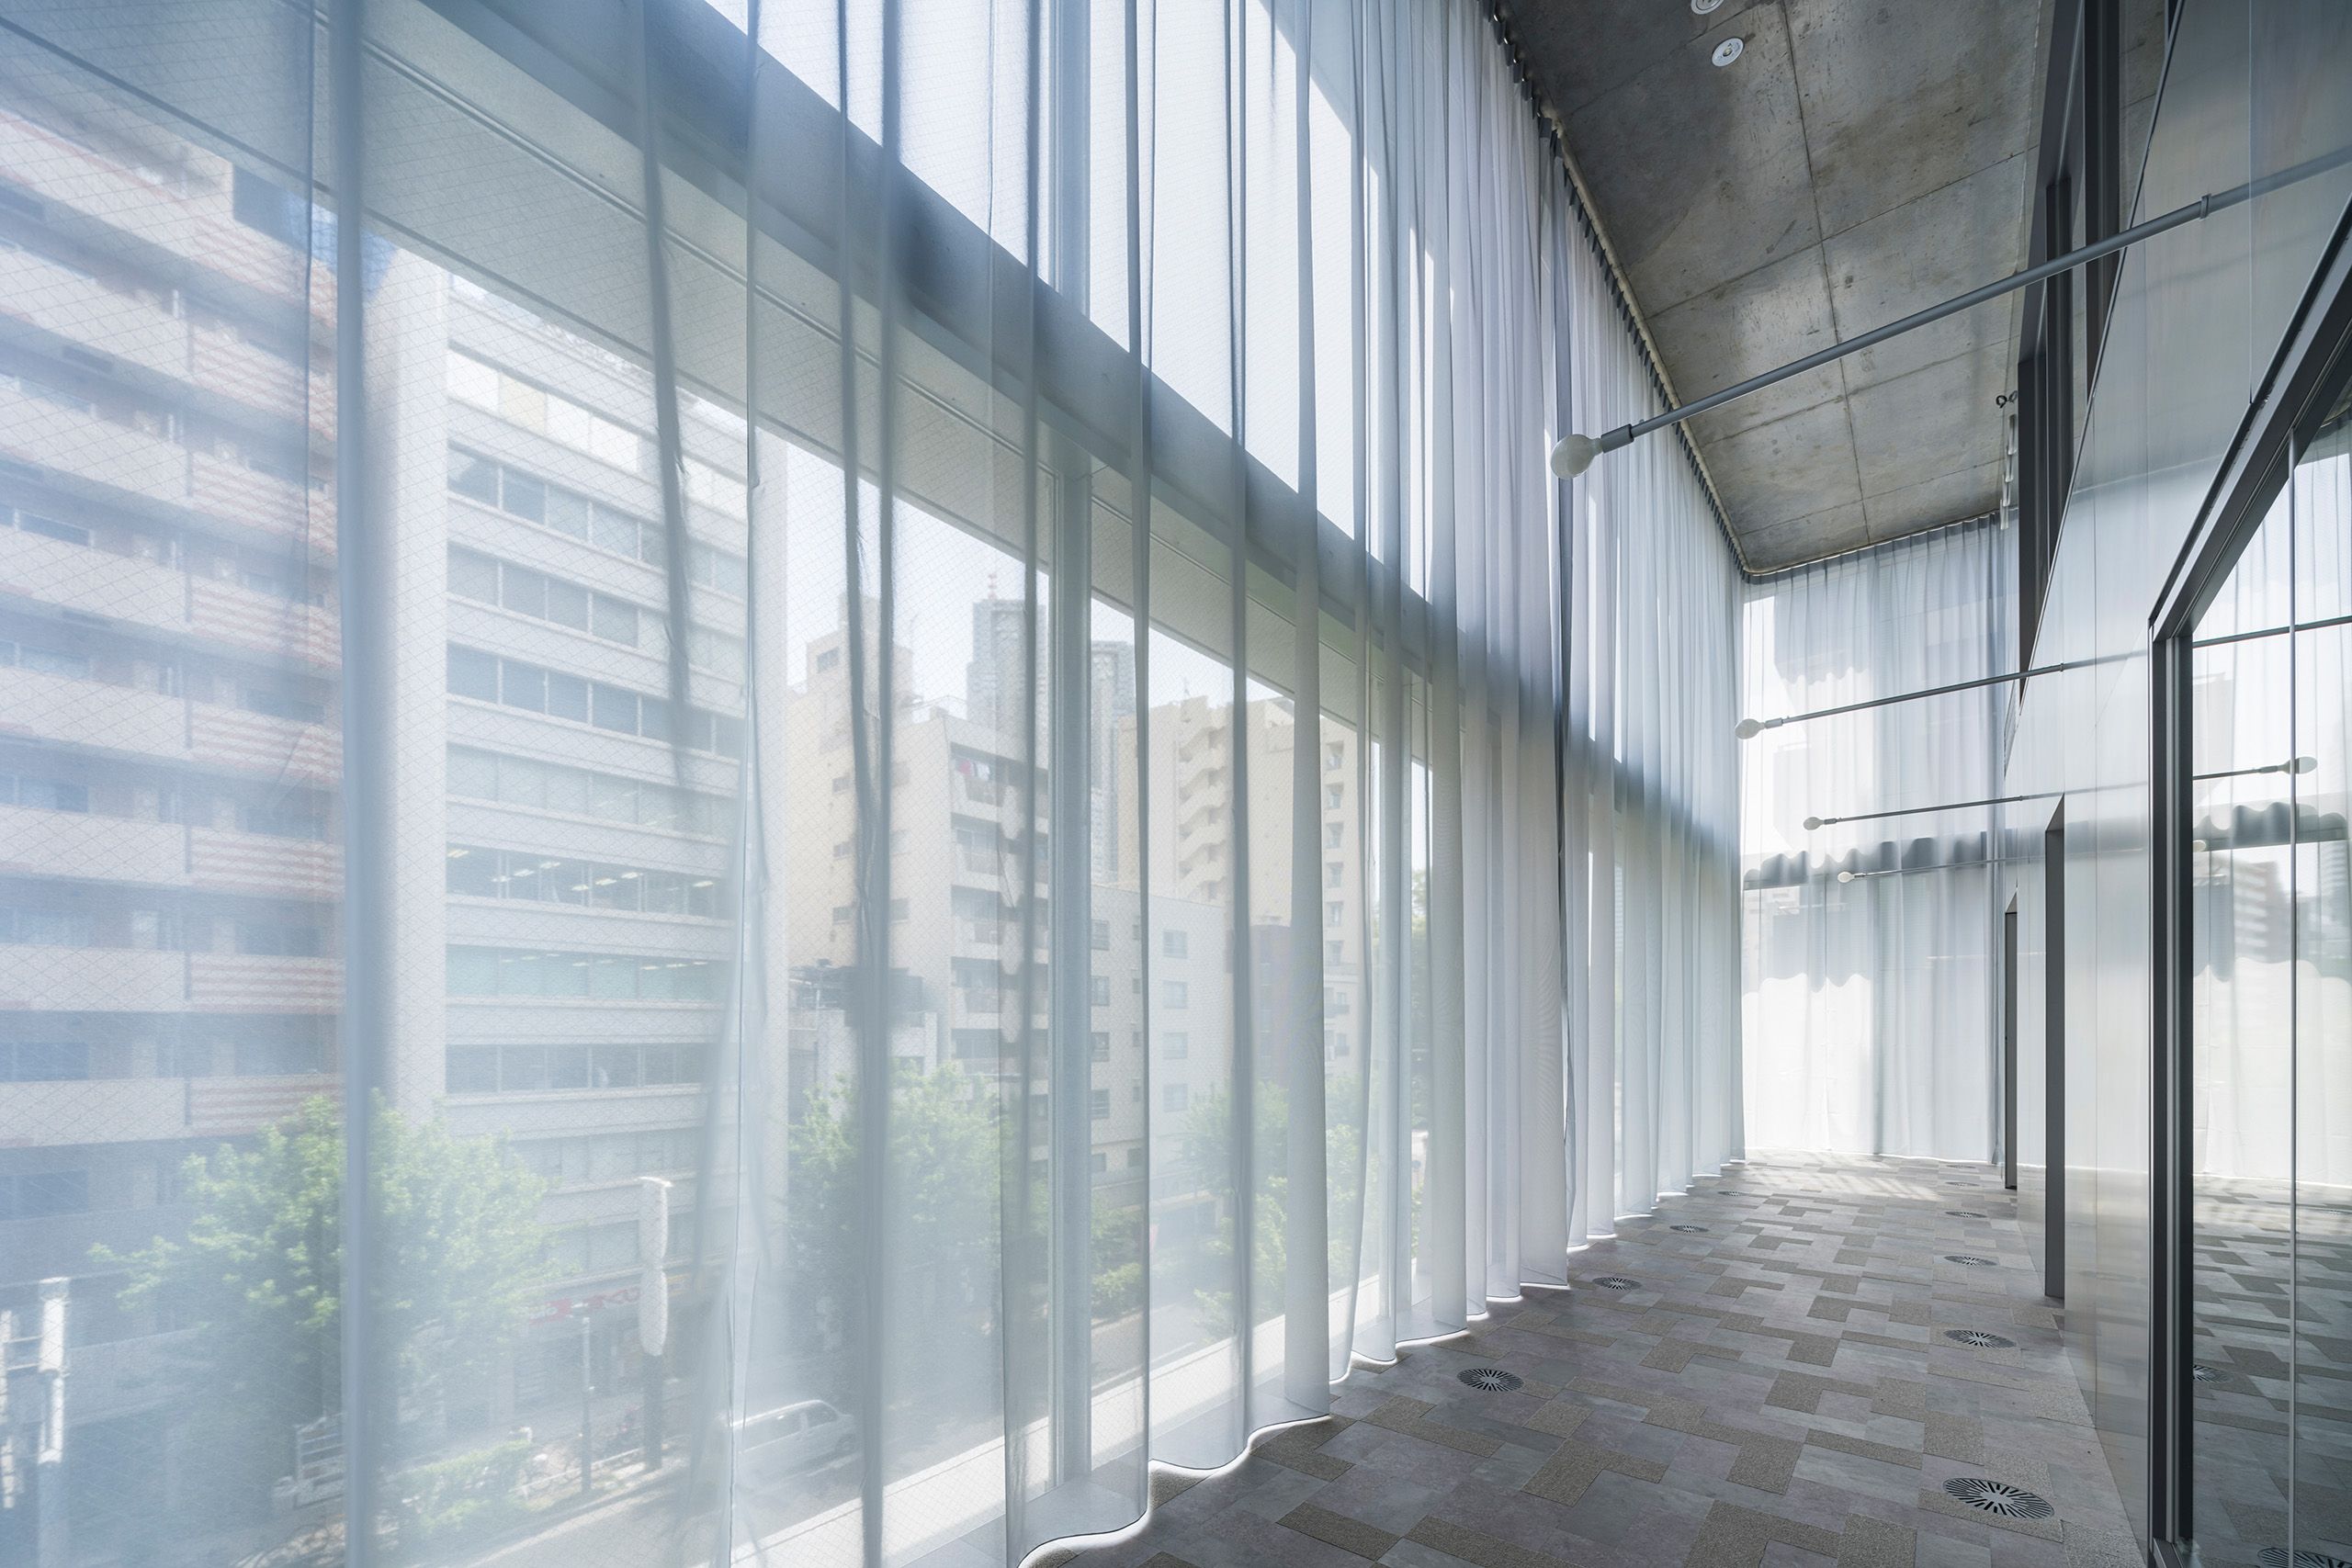 Offene Fensterfront mit Création Baumann Vorhang SHADOW. Blick auf Tokyo.